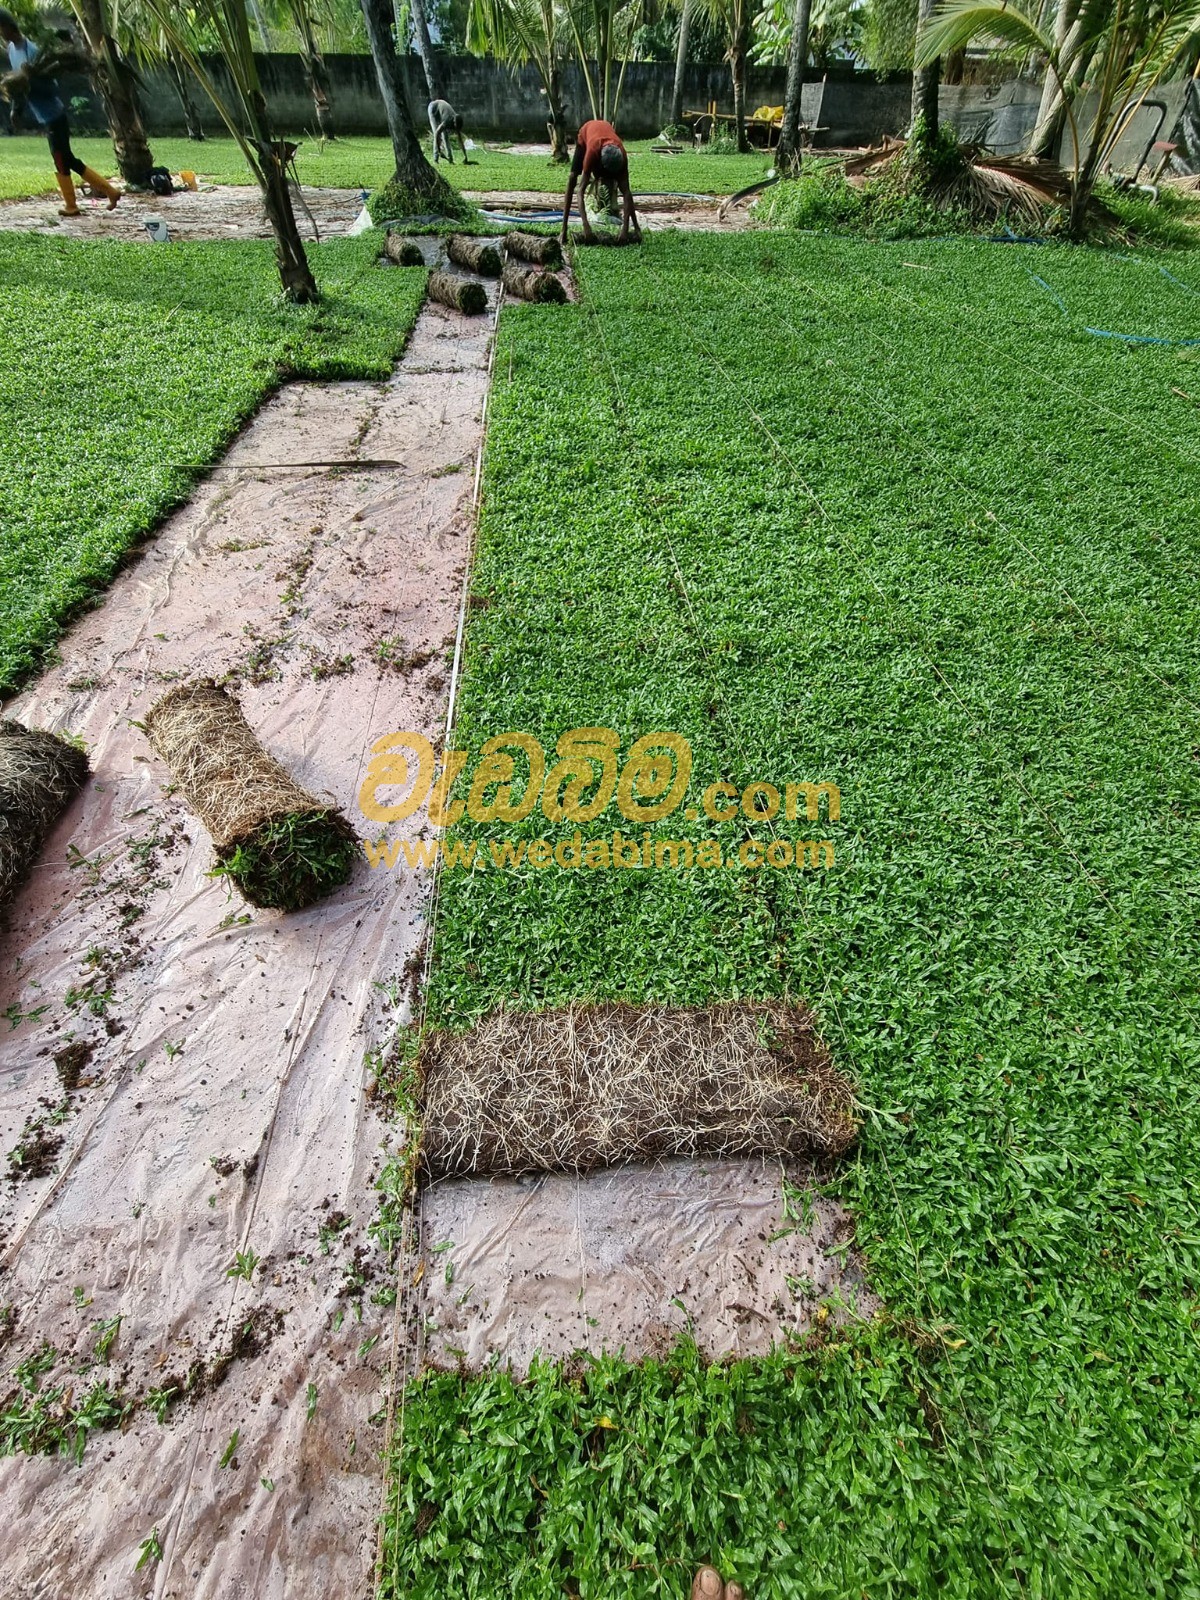 Grass suppliers Sri lanka